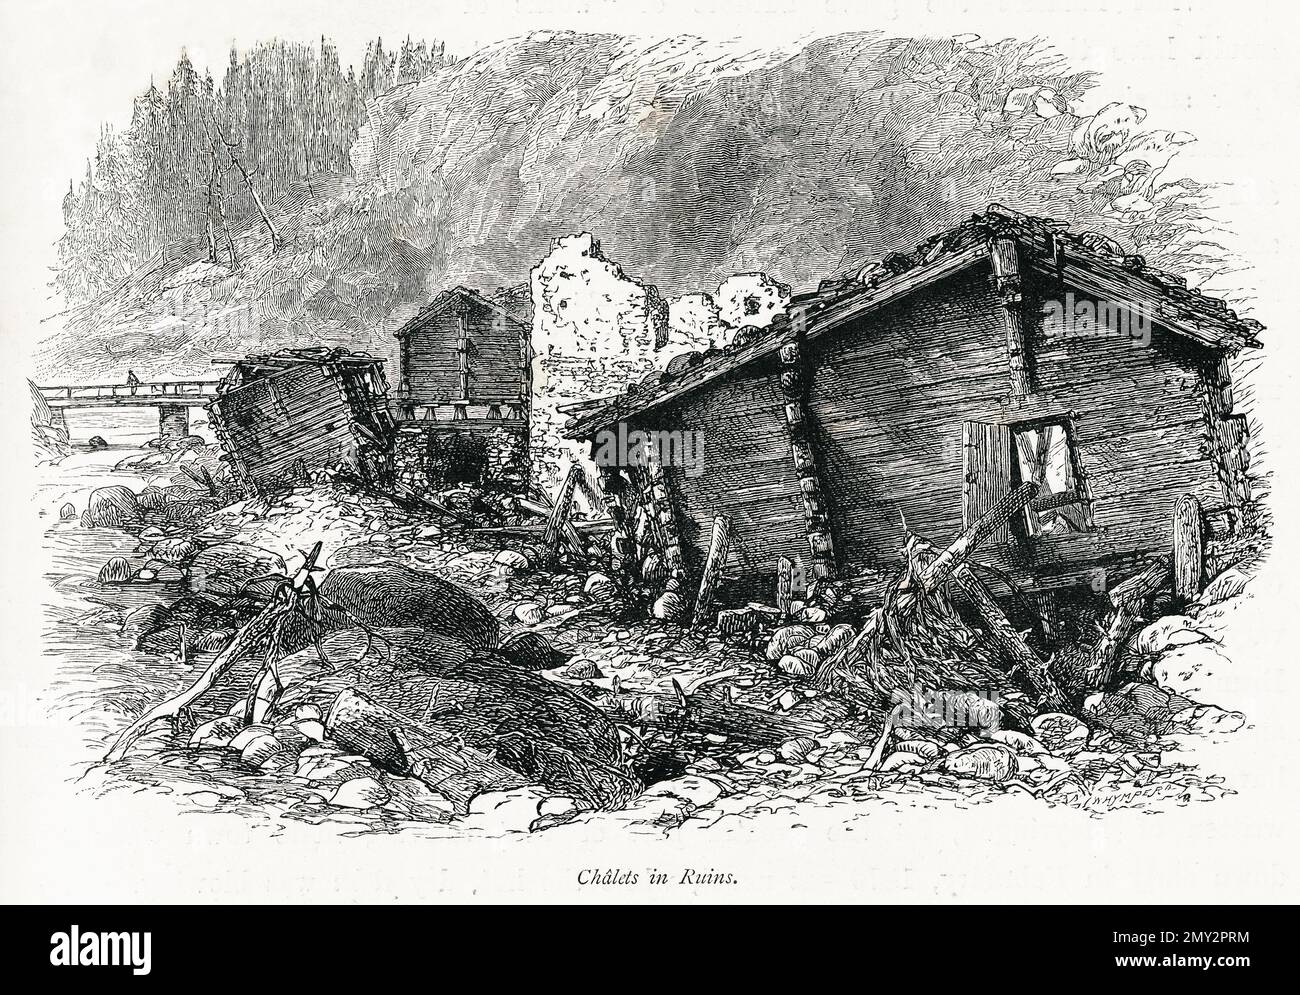 Antica incisione di chalet in rovina nelle Alpi Svizzere. Illustrazione pubblicata in picturesque Europe, Vol. V (Cassell & Company, Limite Foto Stock